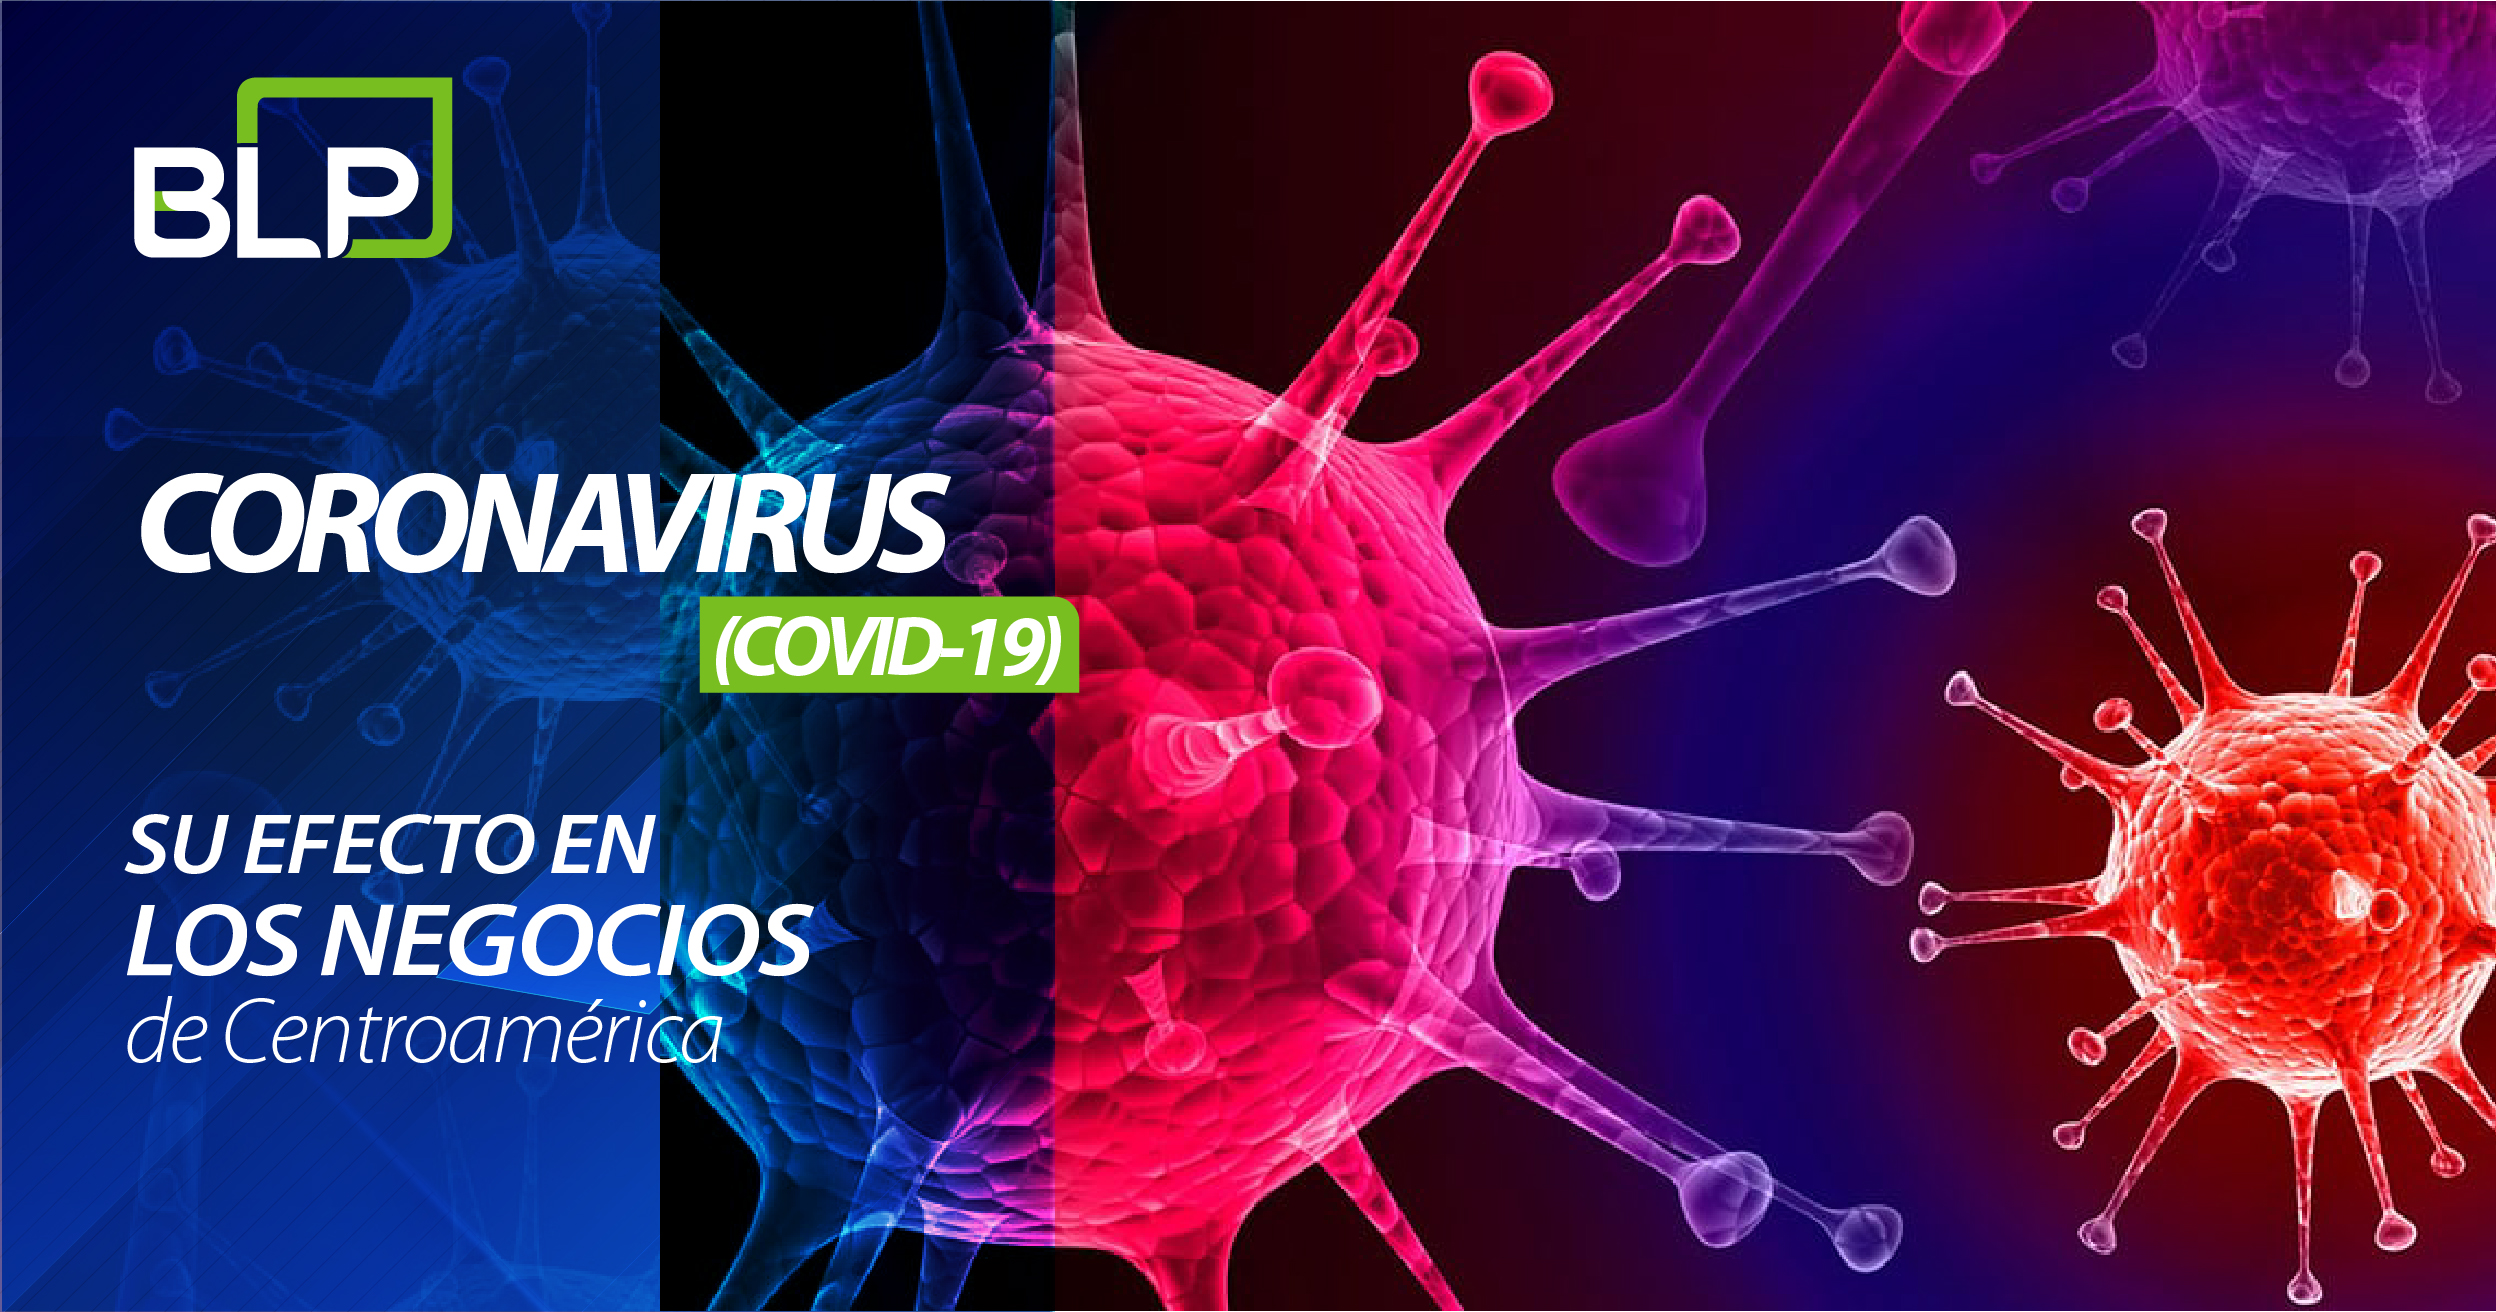 Coronavirus (COVID-19) y su efecto en los negocios en Centroamérica